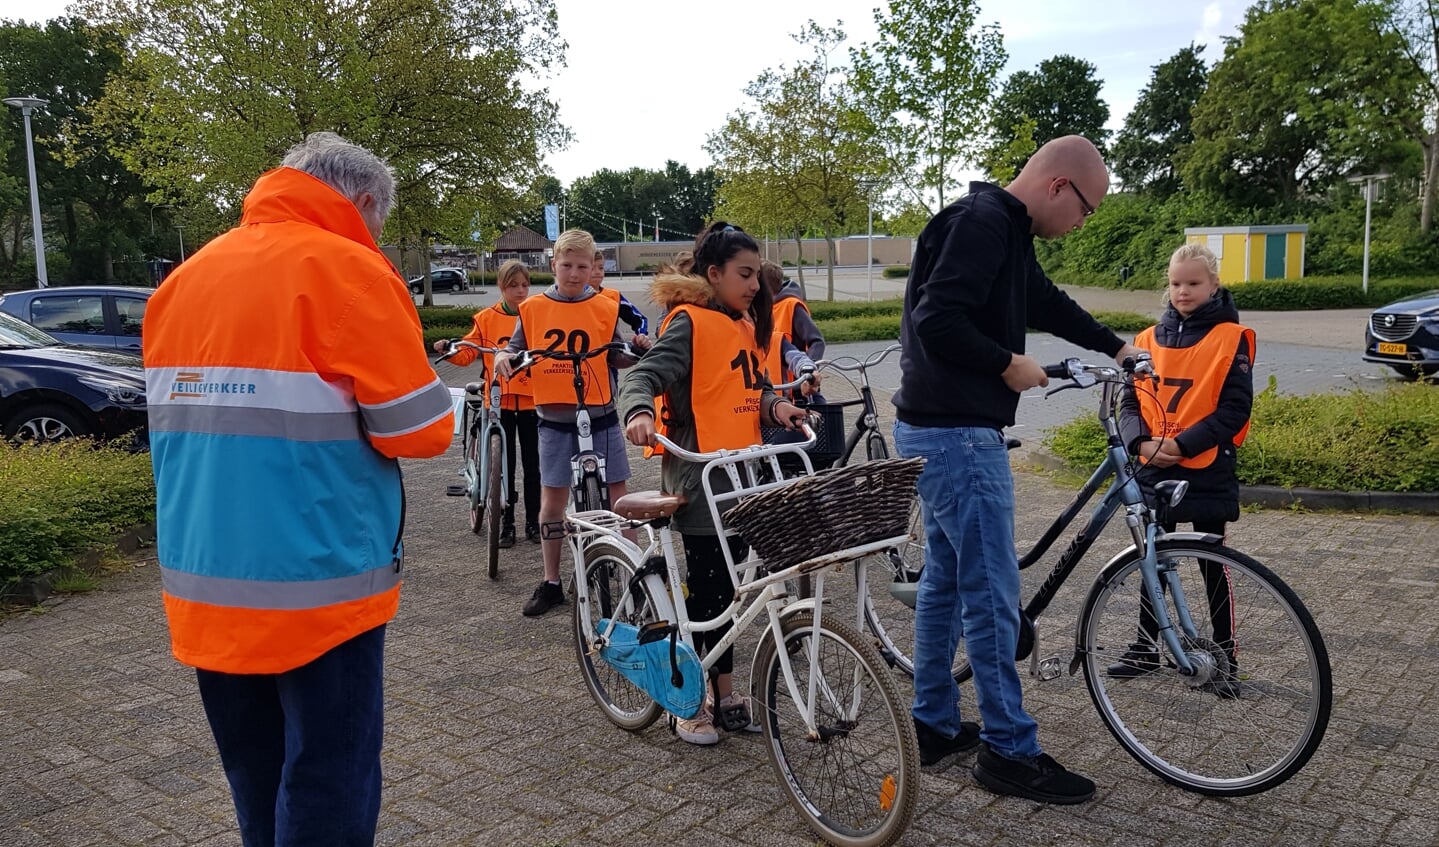 Vóór vertrek worden de fietsen gekeurd op deugdelijkheid. Foto: Alice Rouwhorst